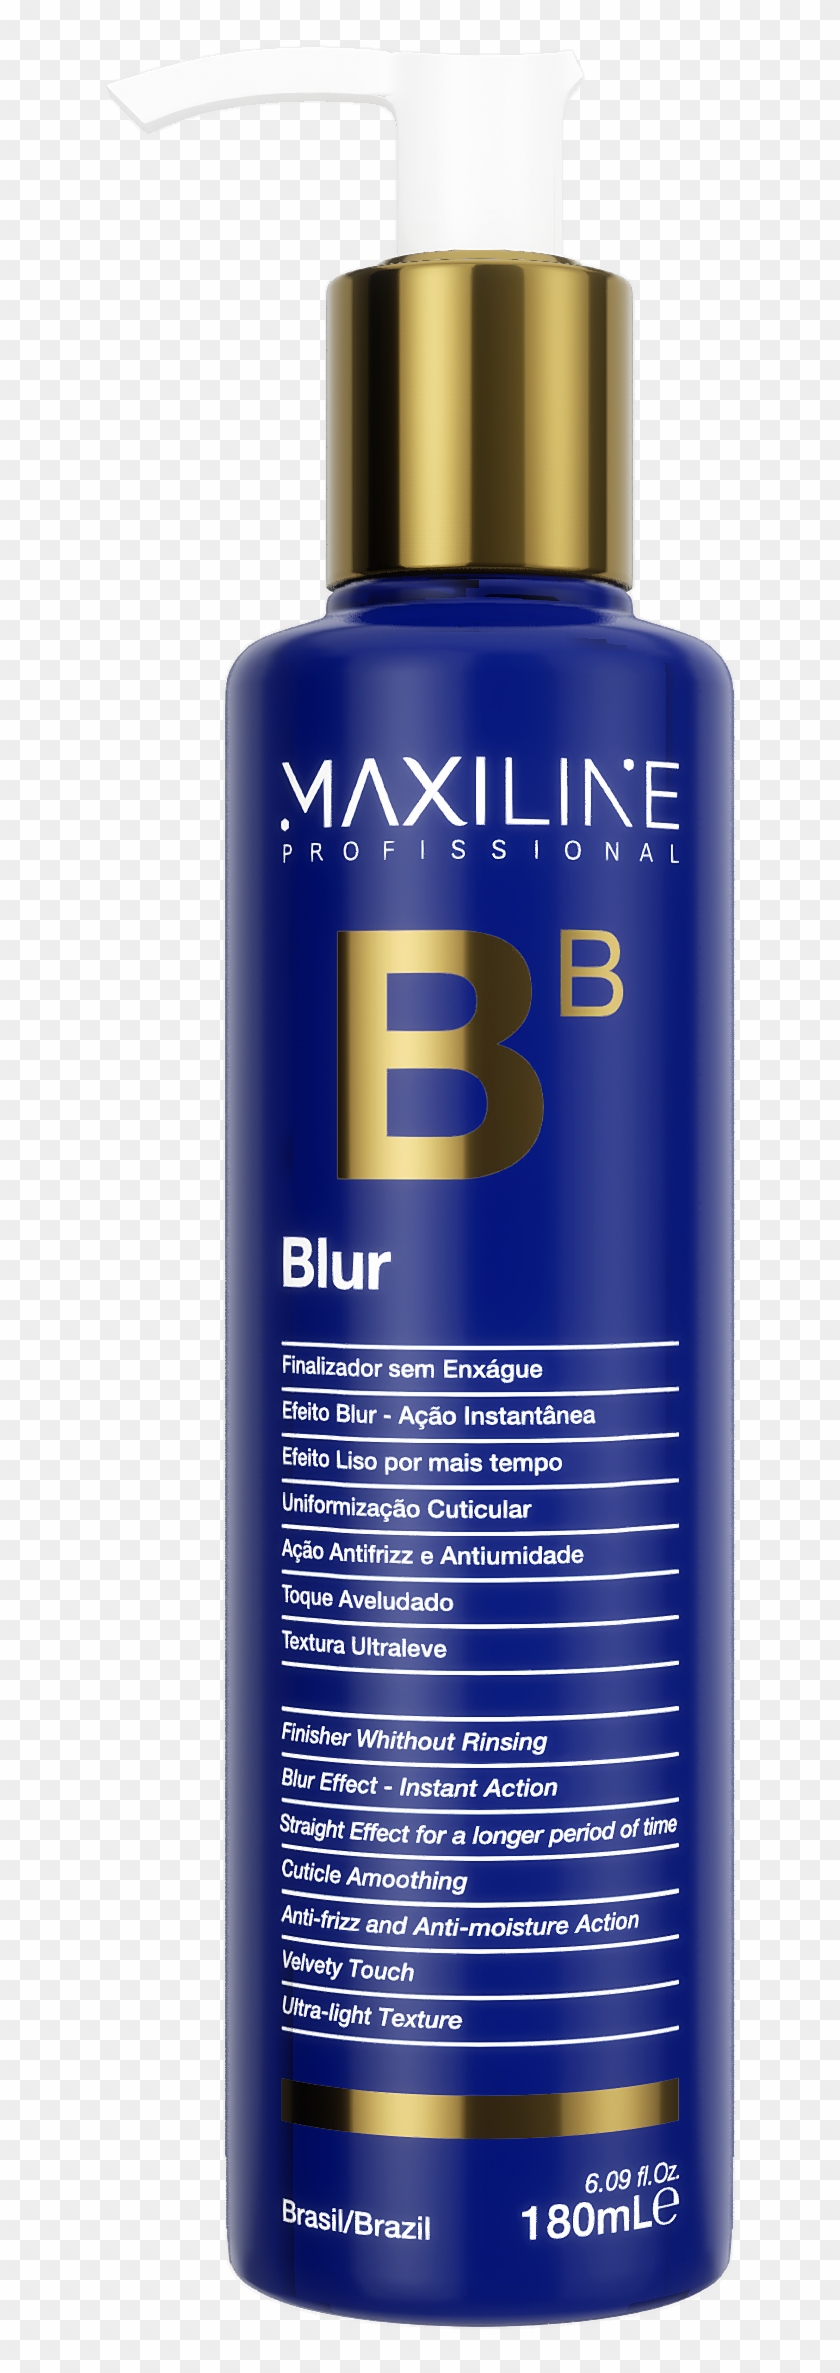 Bb Blur - Cosmetics Clipart